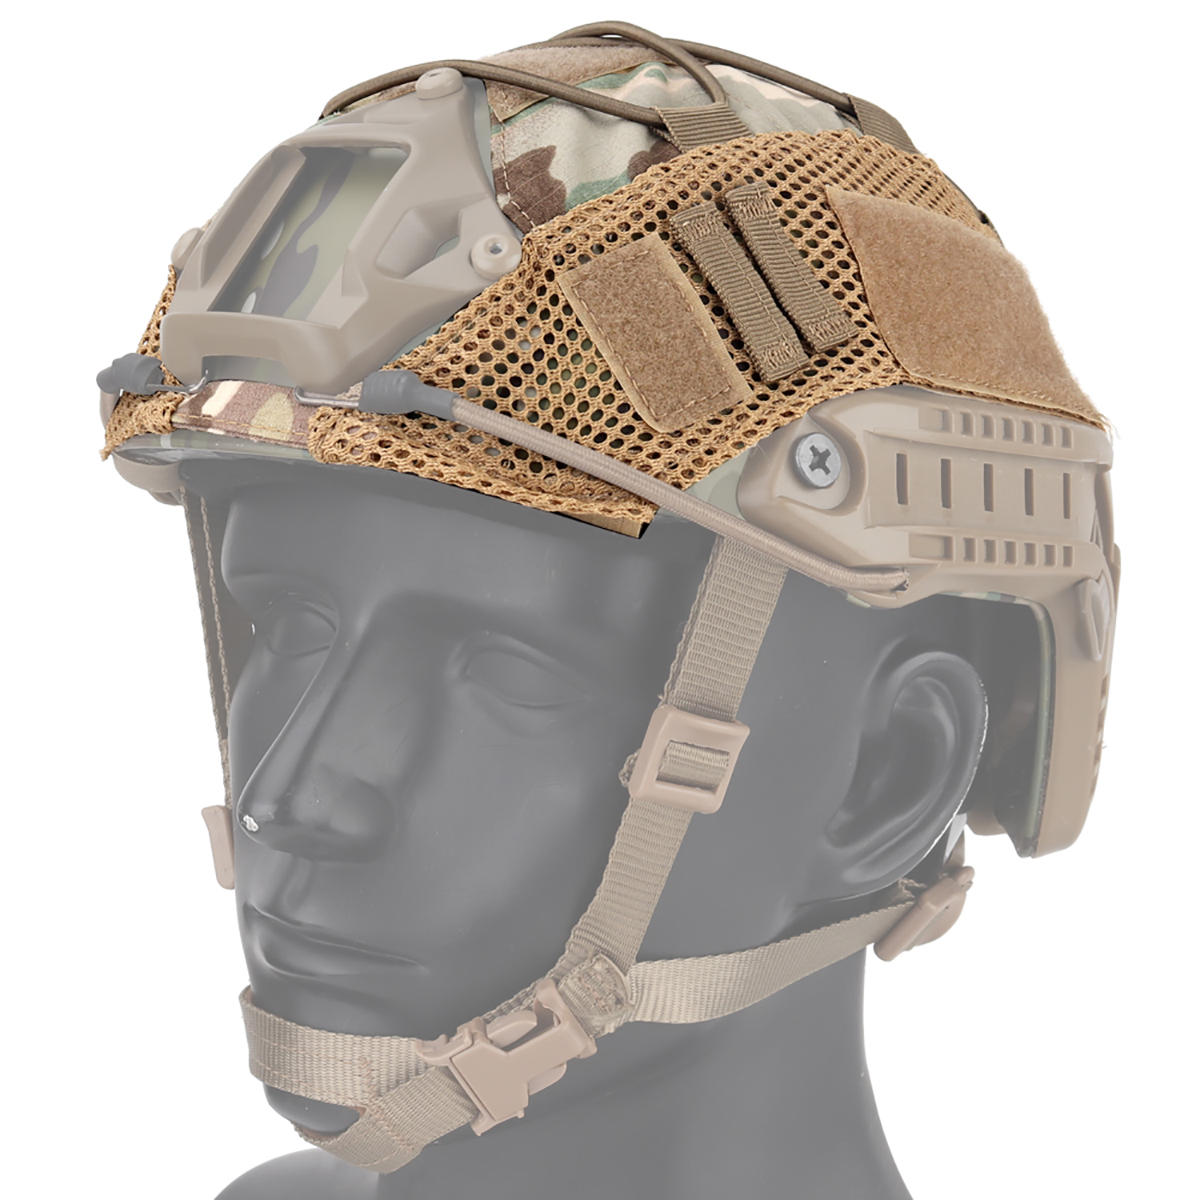 

Тактический защитный шлем Airsoft Военный Fast Helmet Охота Пейнтбол Gear Combat